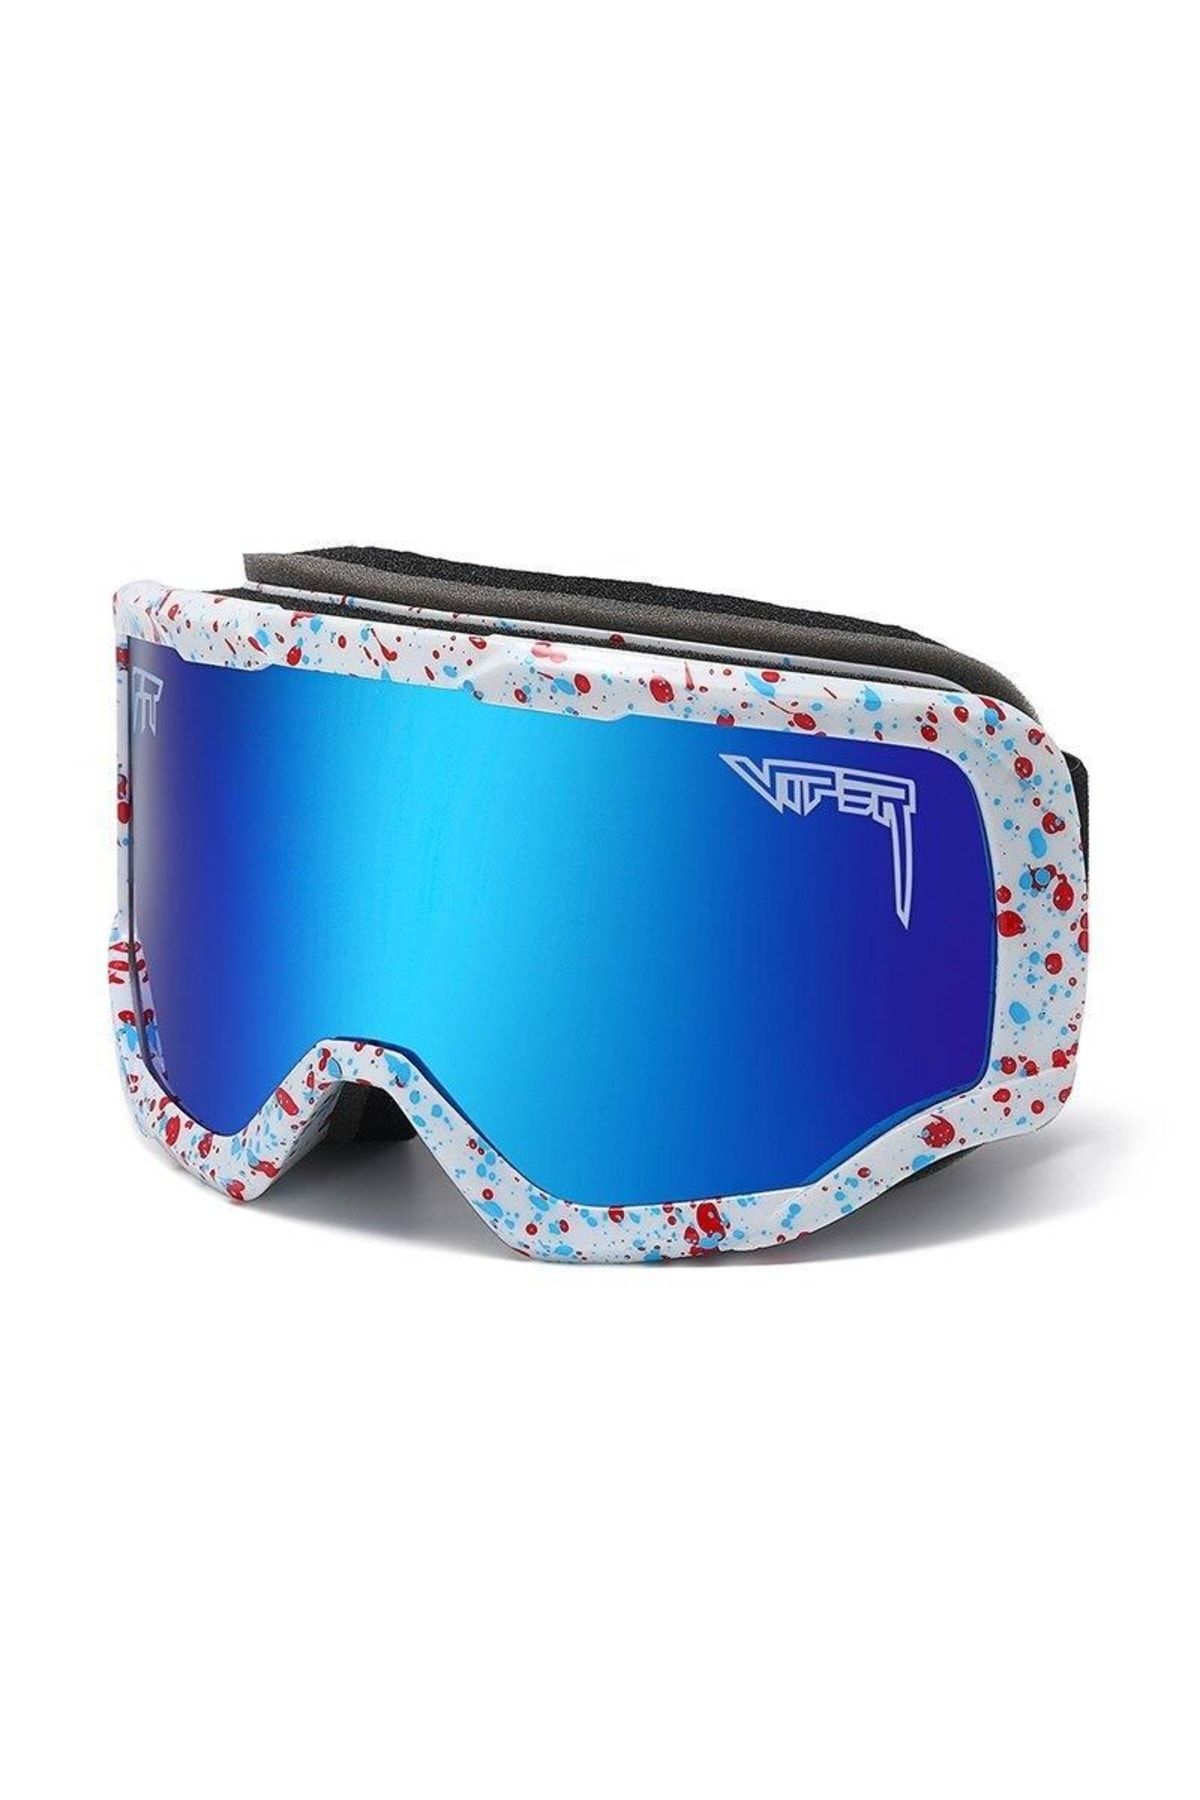 Schulzz Uv400 Korumalı Buğu Önleyici Çift Katmanlı Snowboard Kayak Gözlüğü